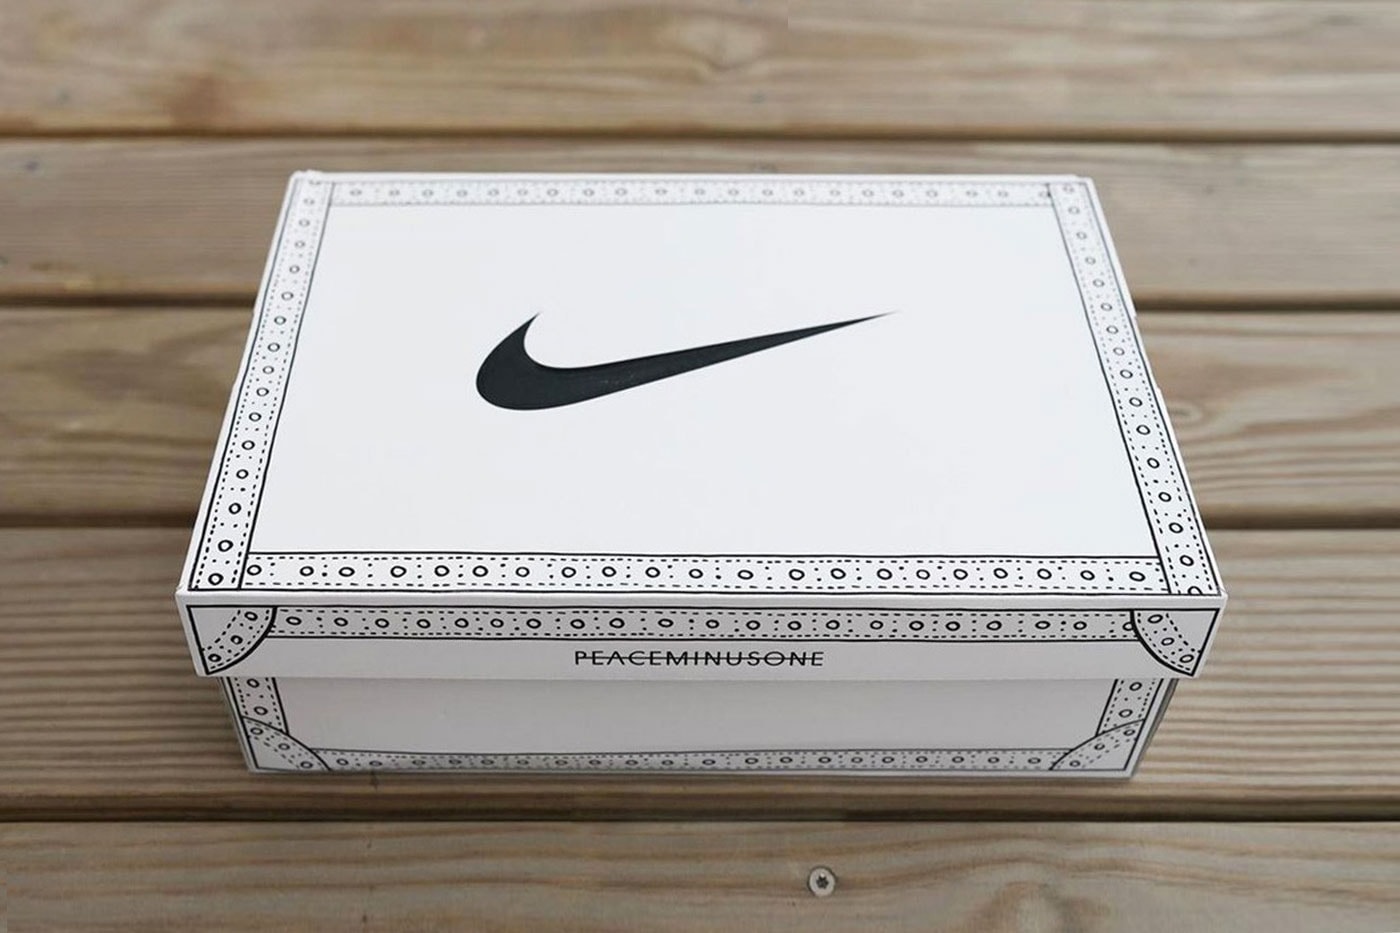 PEACEMINUSONE x Nike Kwondo 1 Shoebox First Look